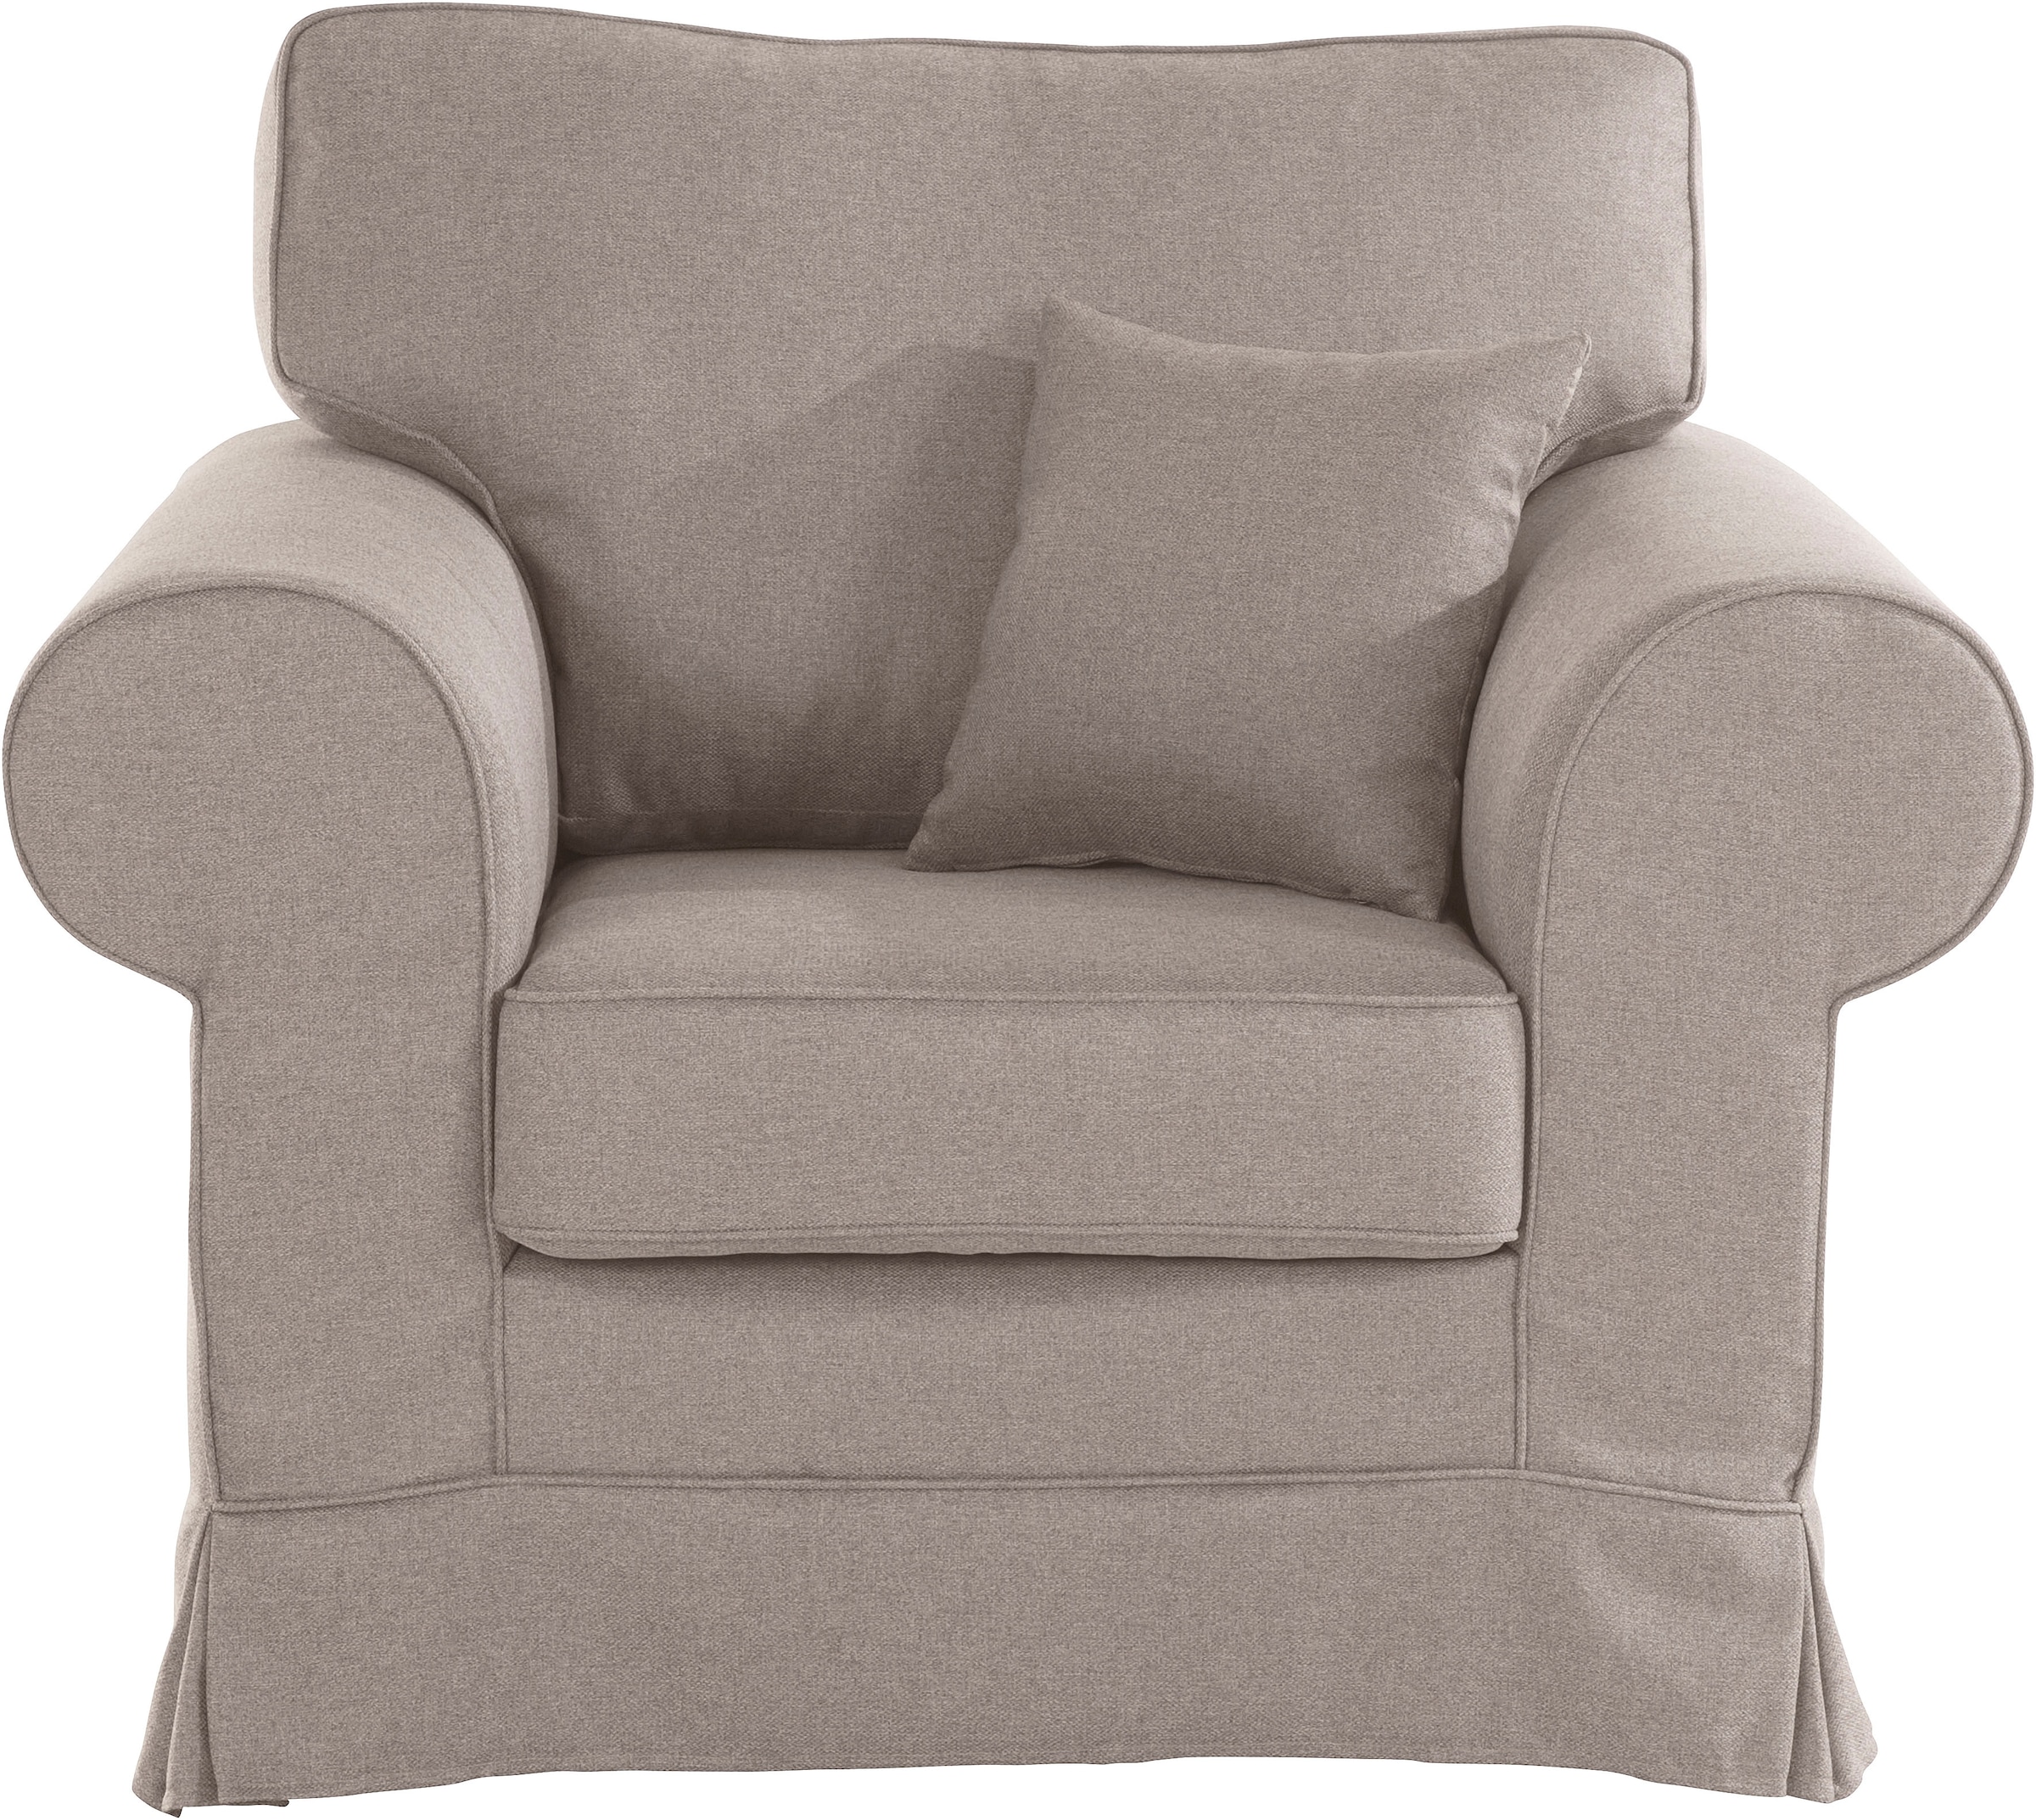 Home affaire versandkostenfrei oder Hussenoptik, auf Shadmoor-Serie zur »Shadmoor«, in mit uni Sessel passend Blumendruck